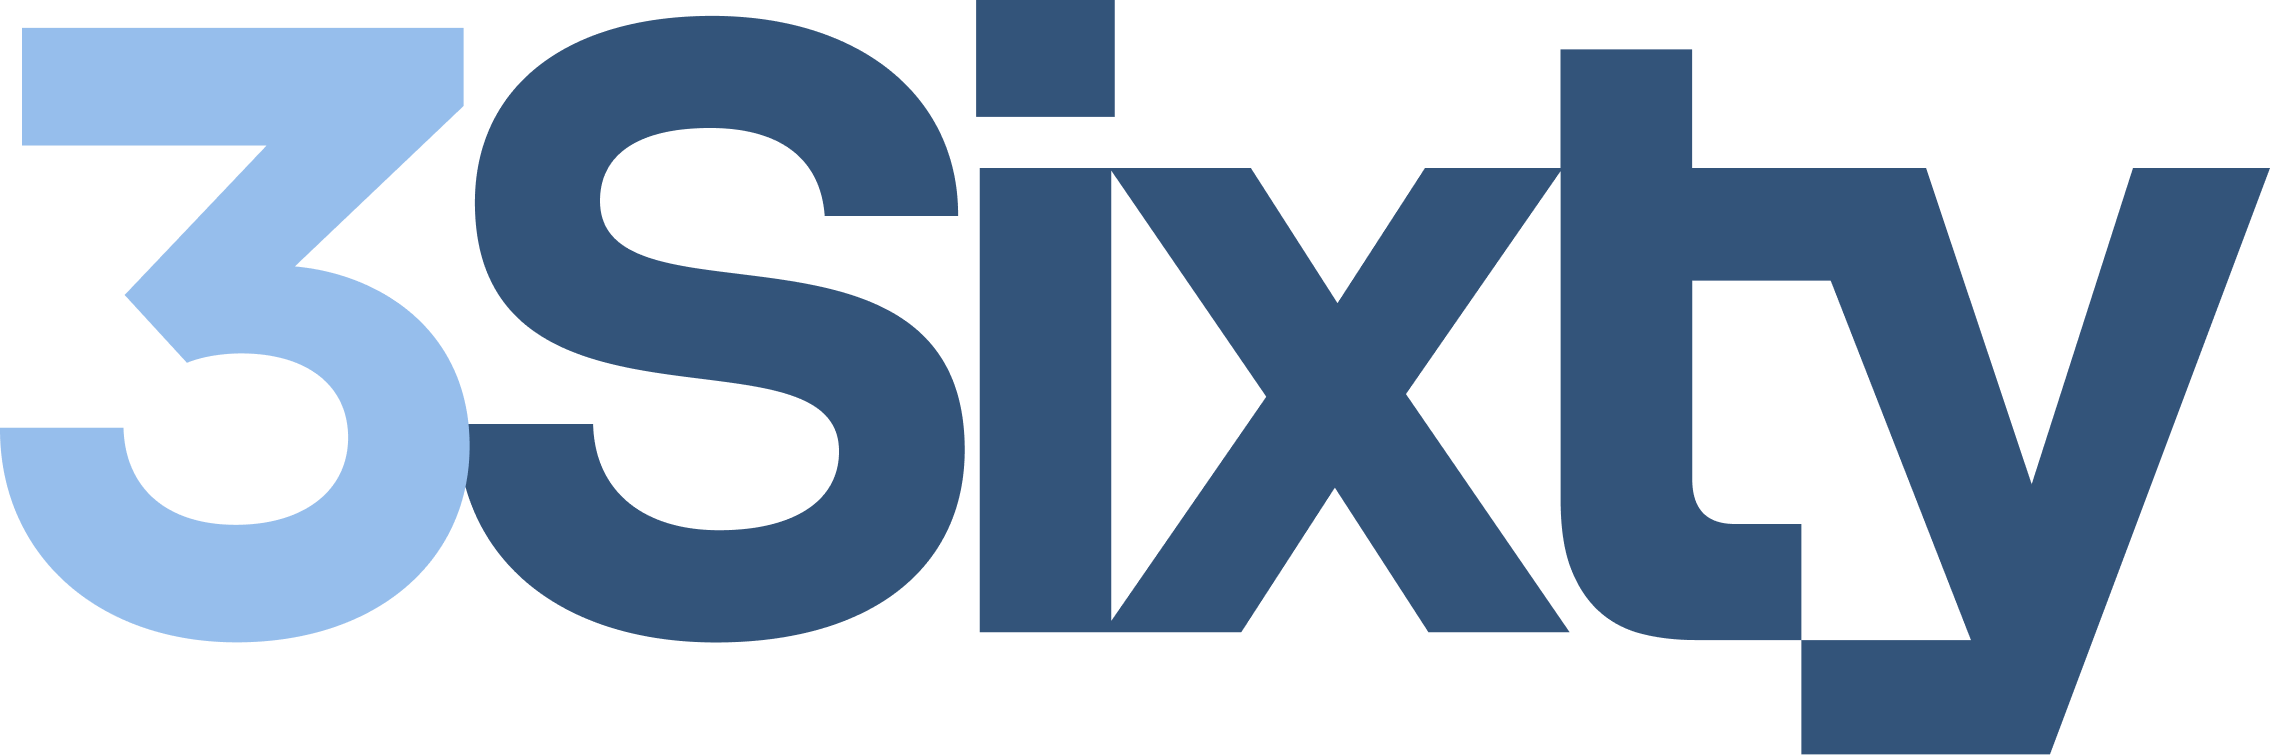 3Sixty Logo